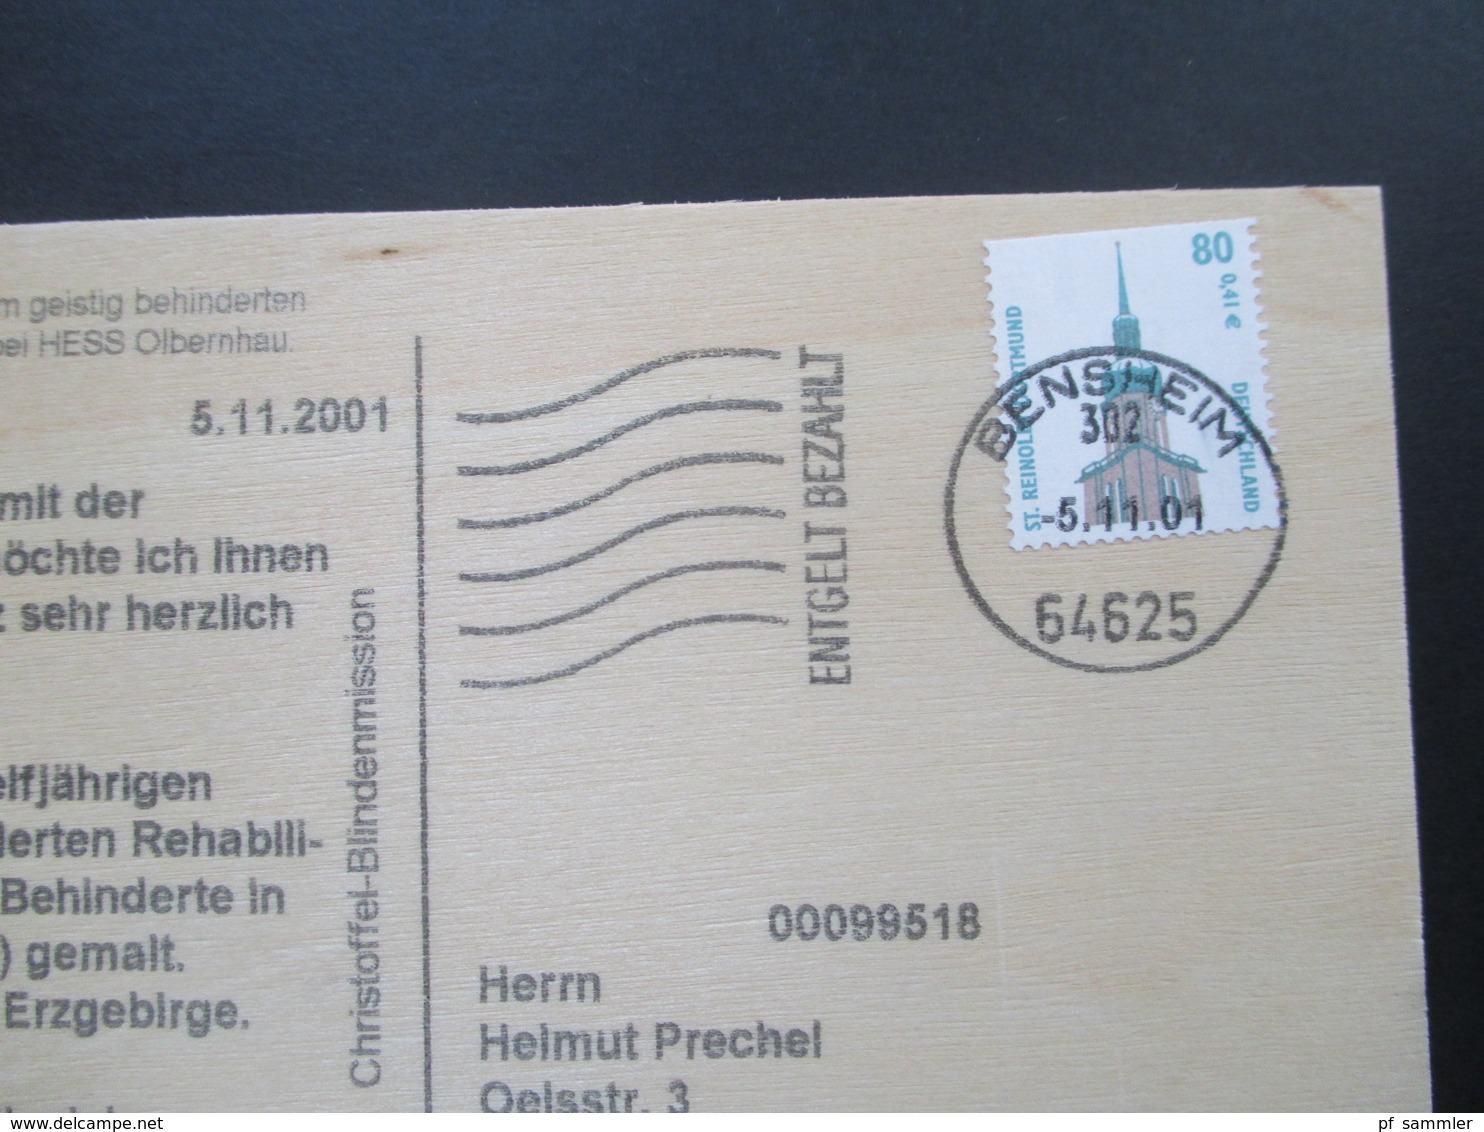 BRD 1999 - 2001 Holzpostkarten der Christoffel Blindenmission Entgelt bezahlt Bensheim